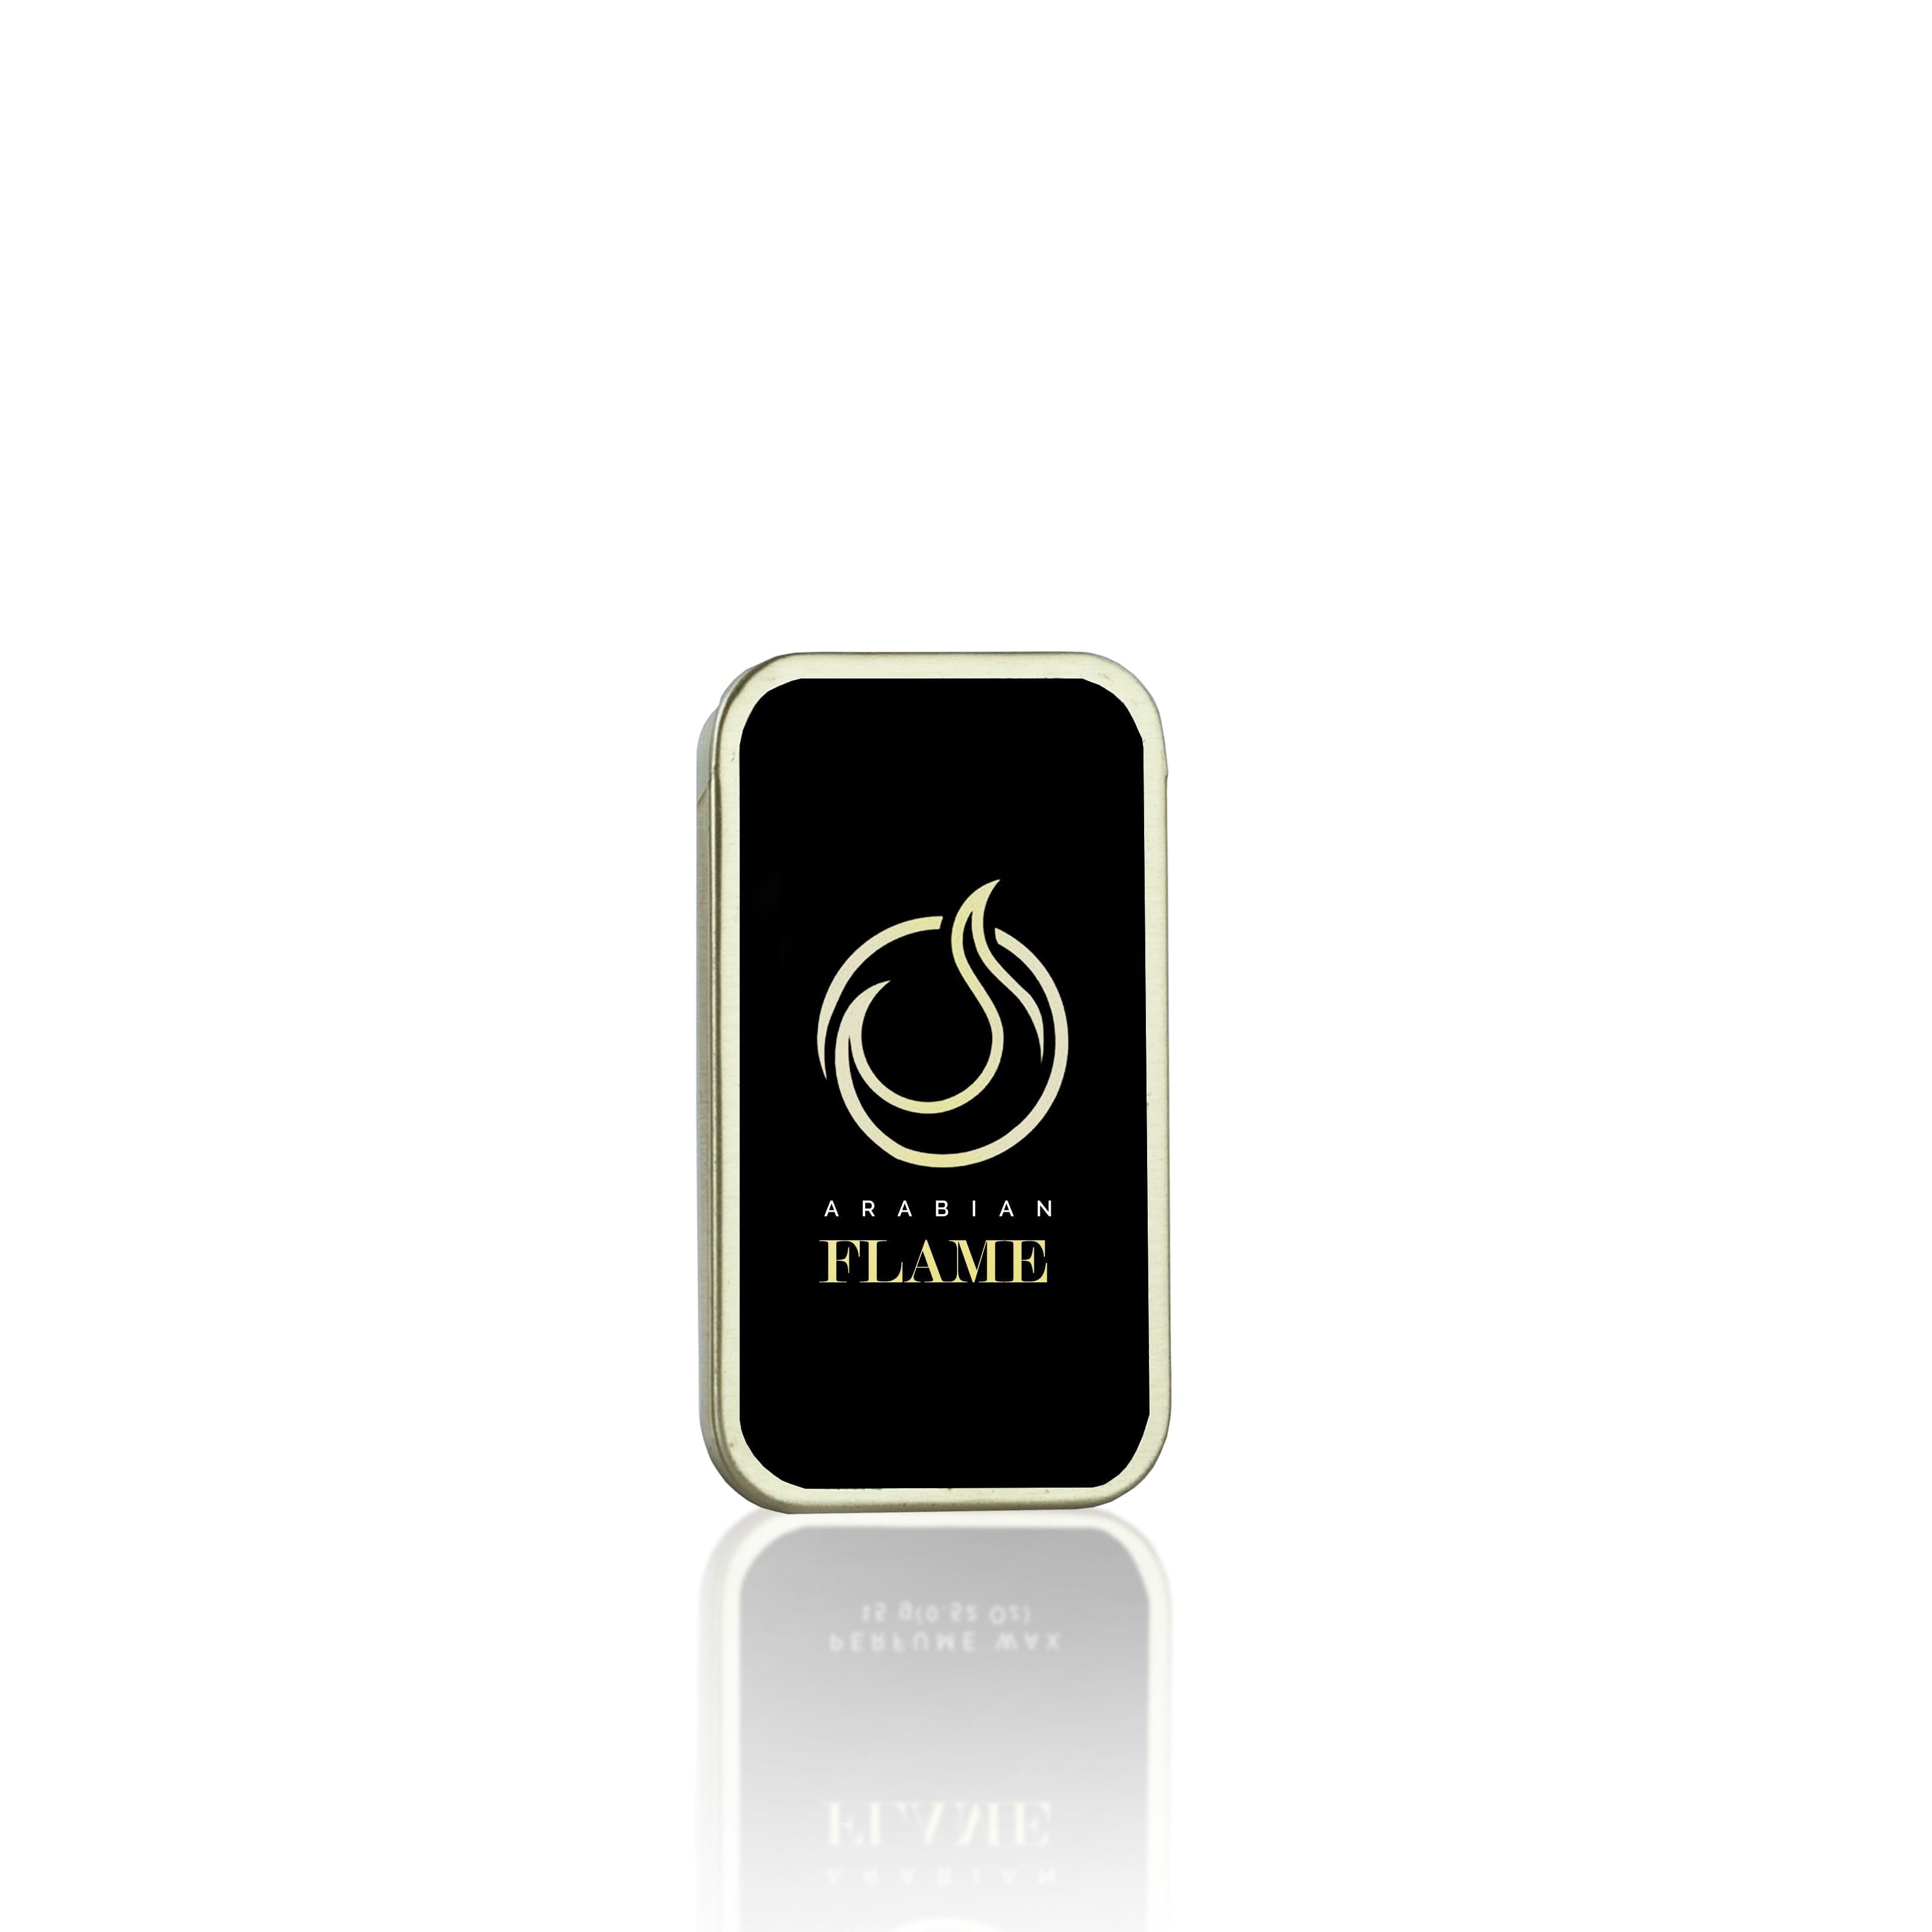 Arabian Flame Perfume Wax